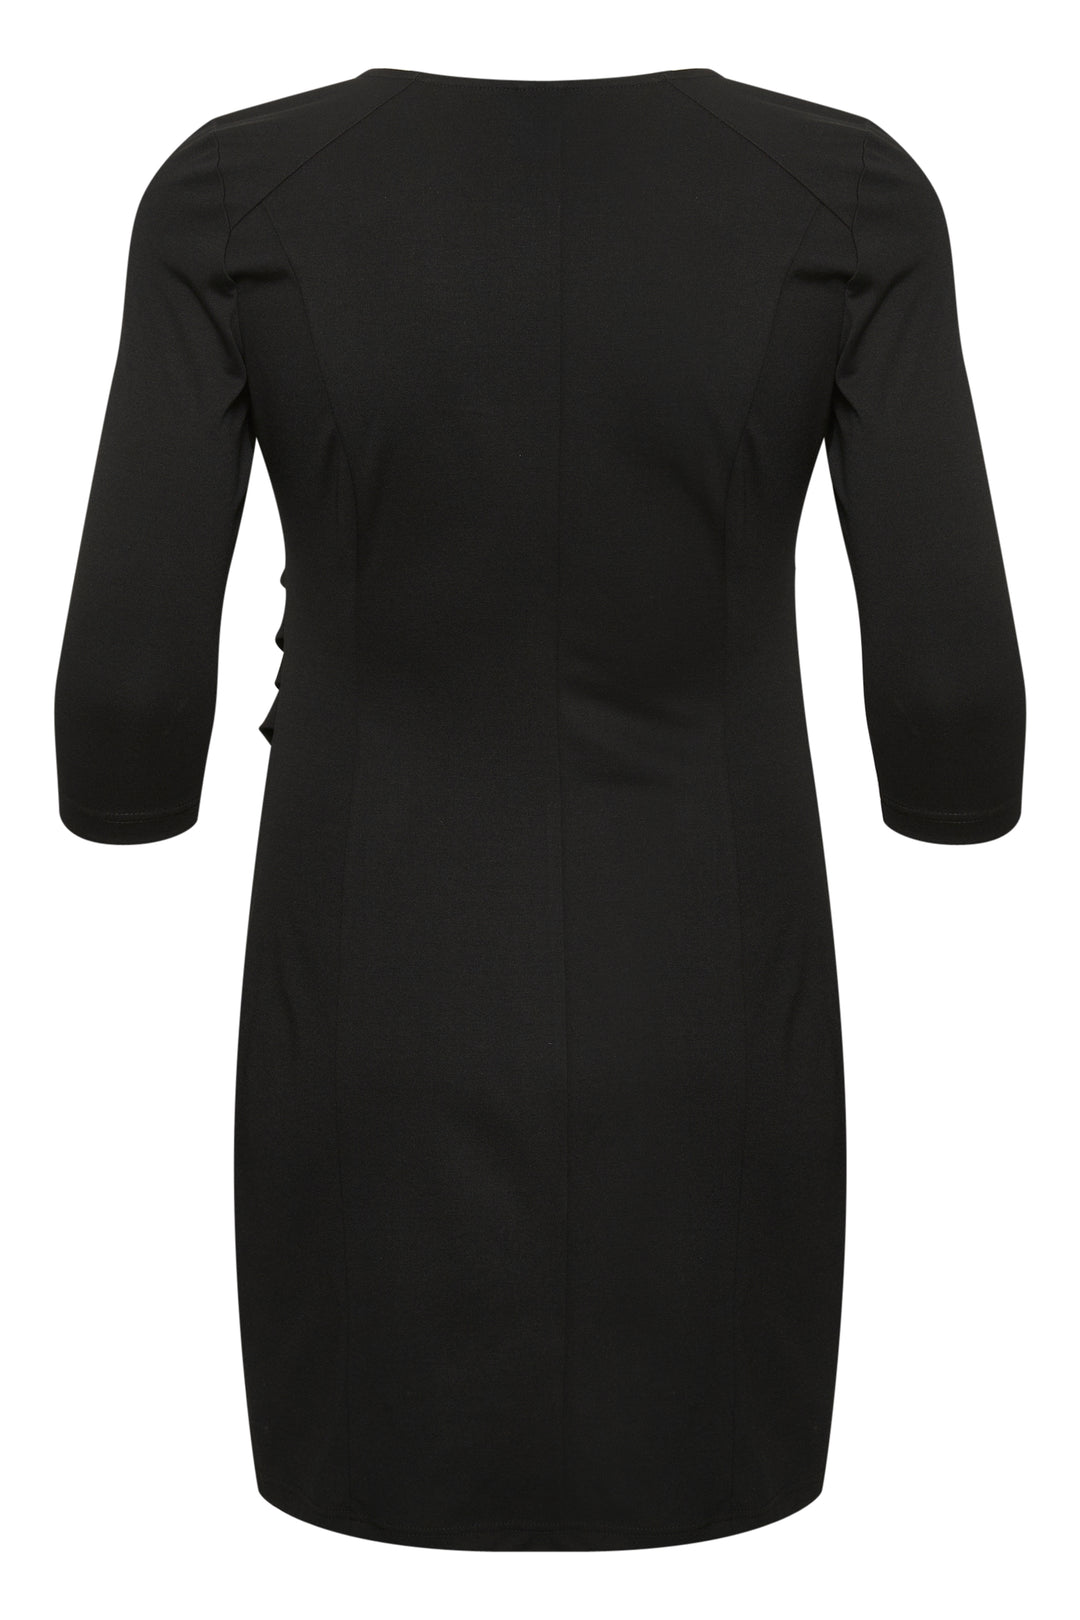 little black dress - kaffe curve - - grote maten - dameskleding - kledingwinkel - herent - leuven